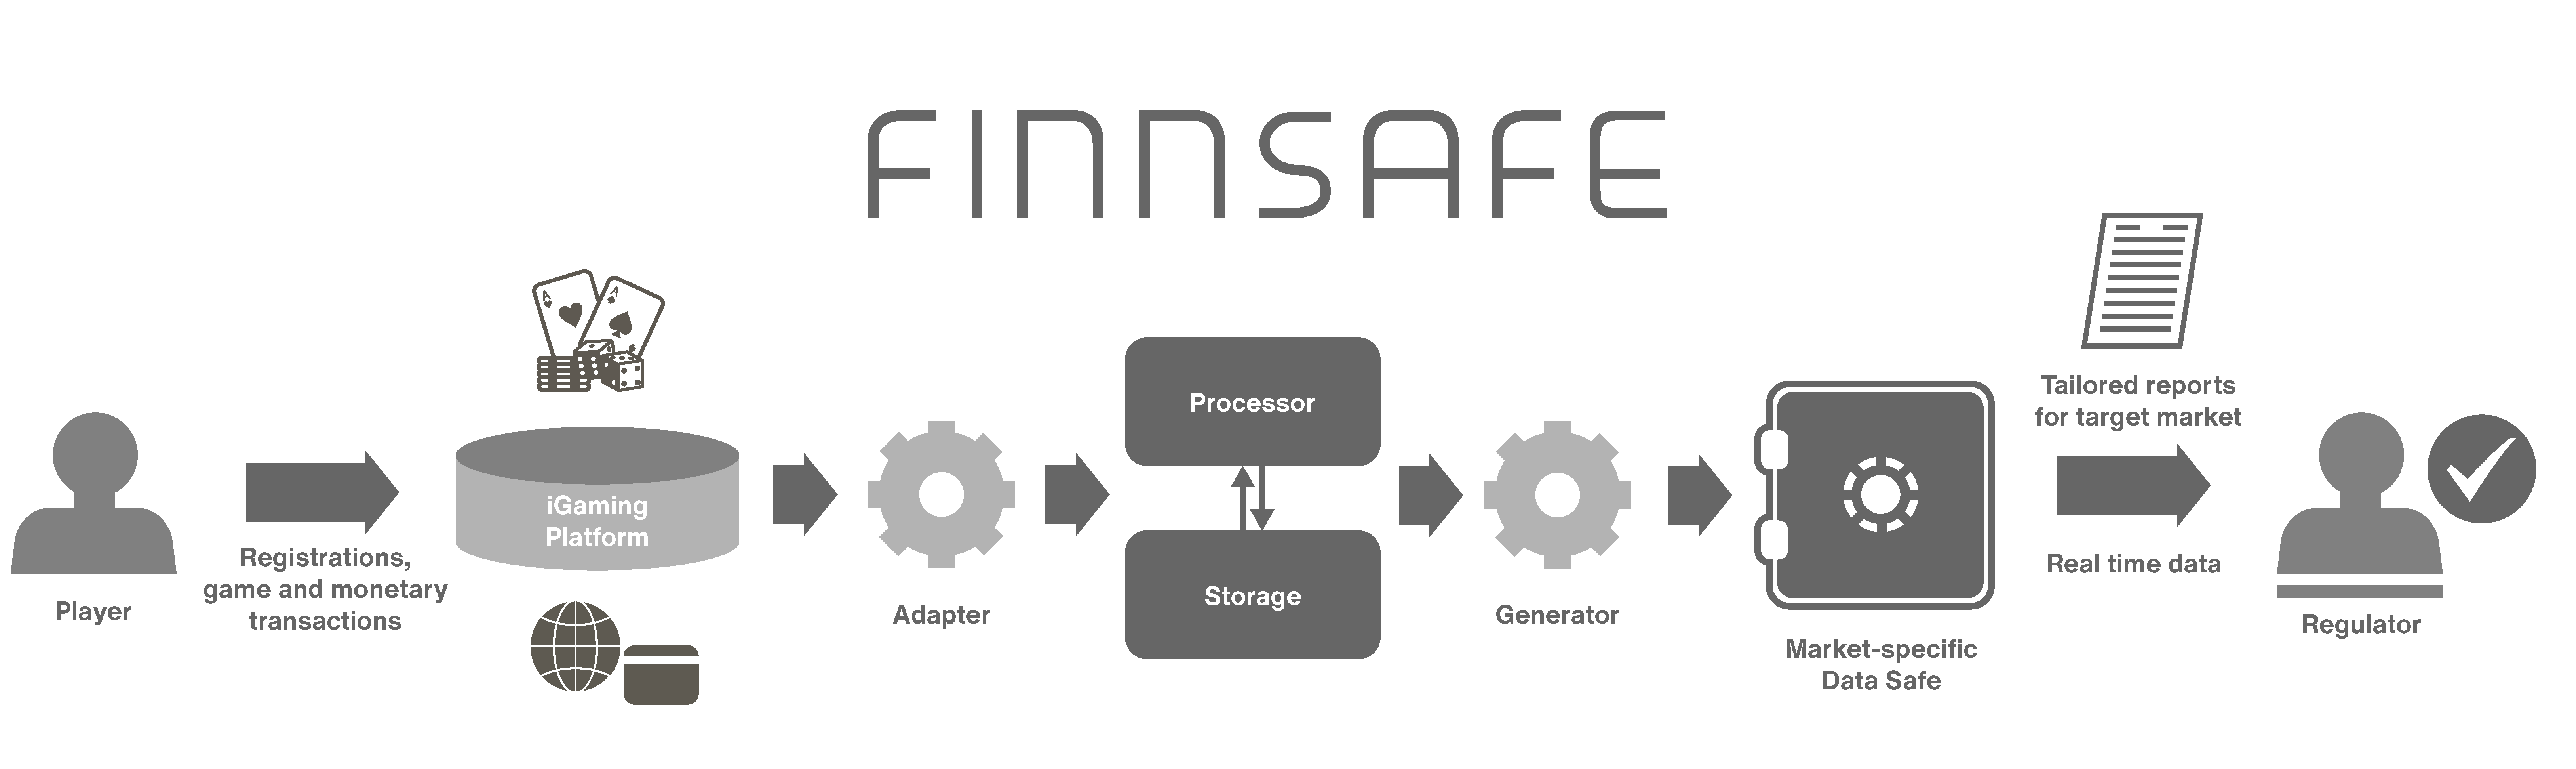 FinnSafe diagram - improved 2022-01